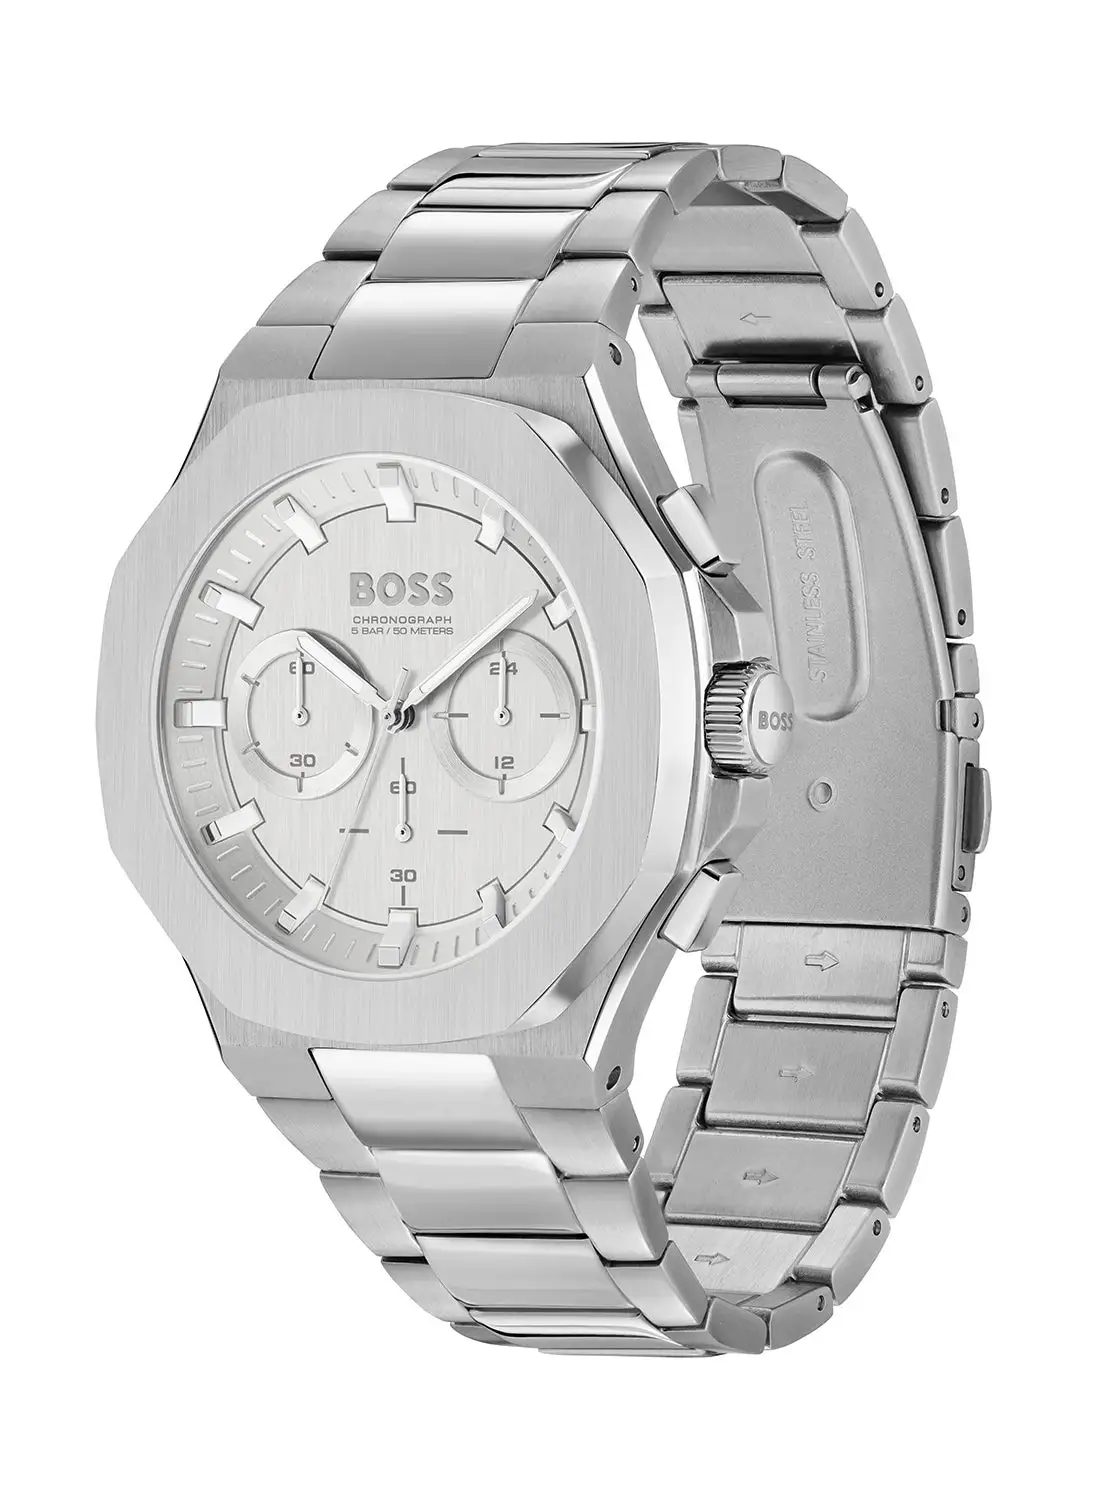 HUGO BOSS Men's Chronograph Tonneau Shape Stainless Steel Wrist Watch 1514087 - 45 Mm